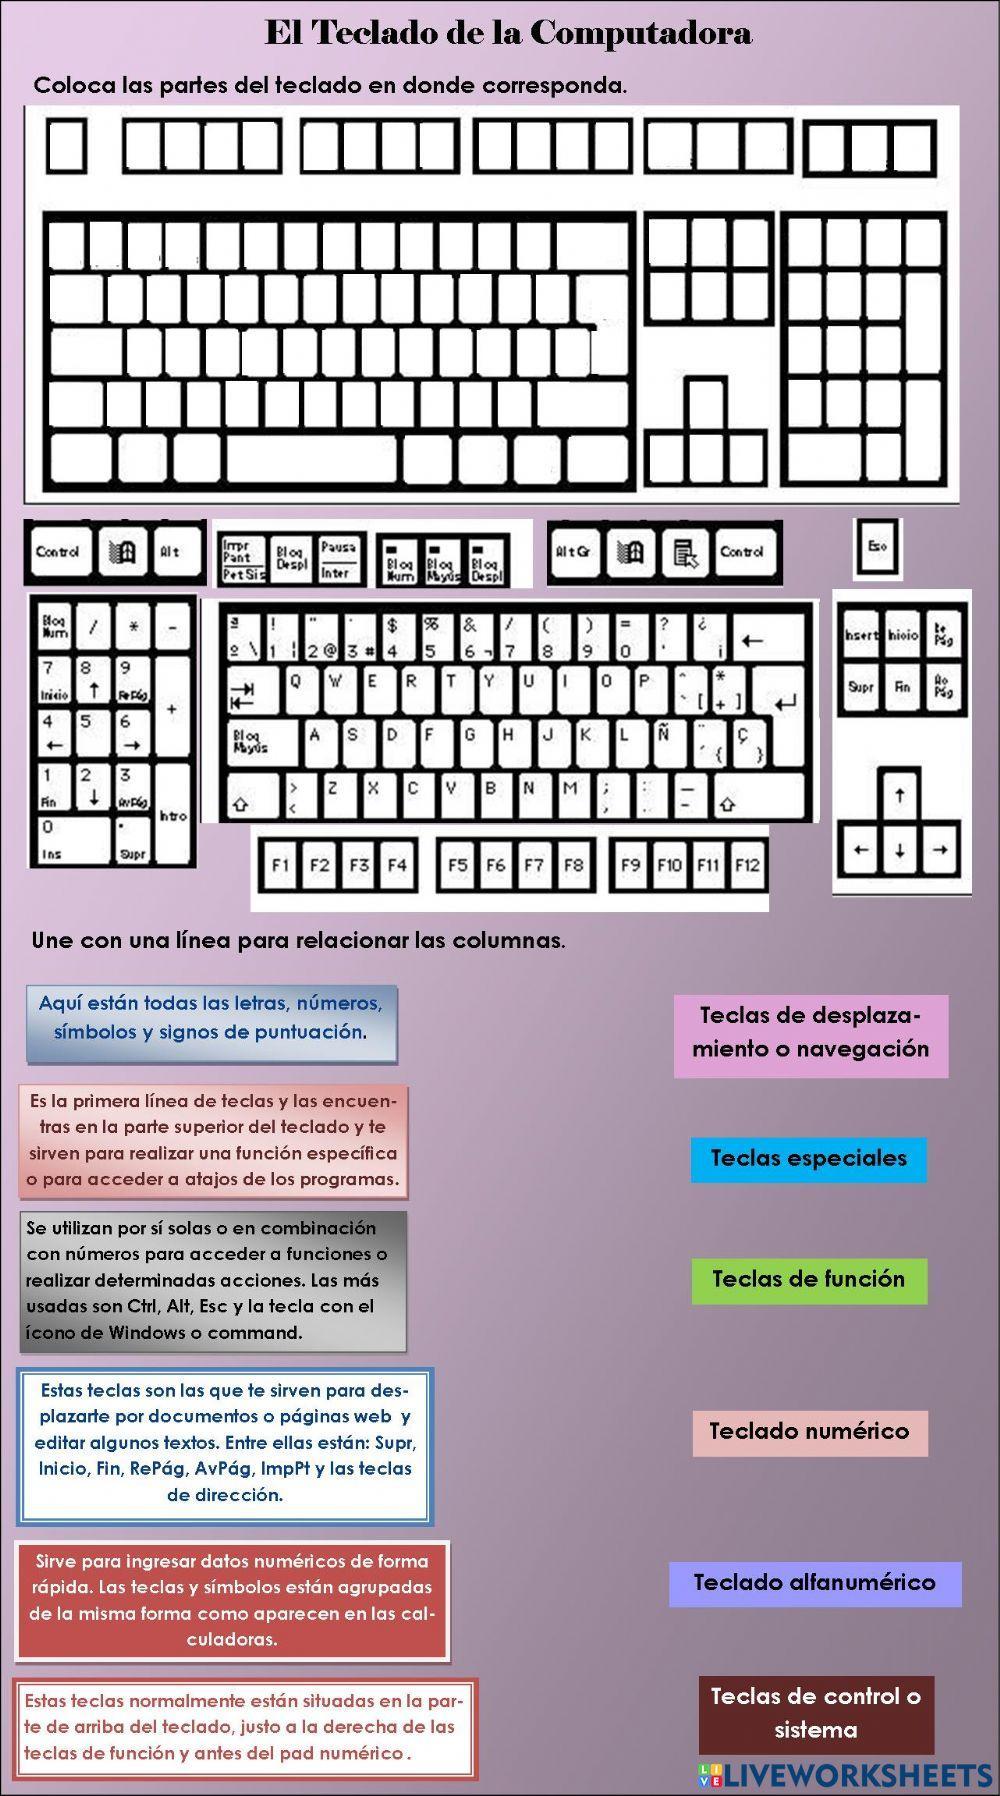 El teclado de la computadora